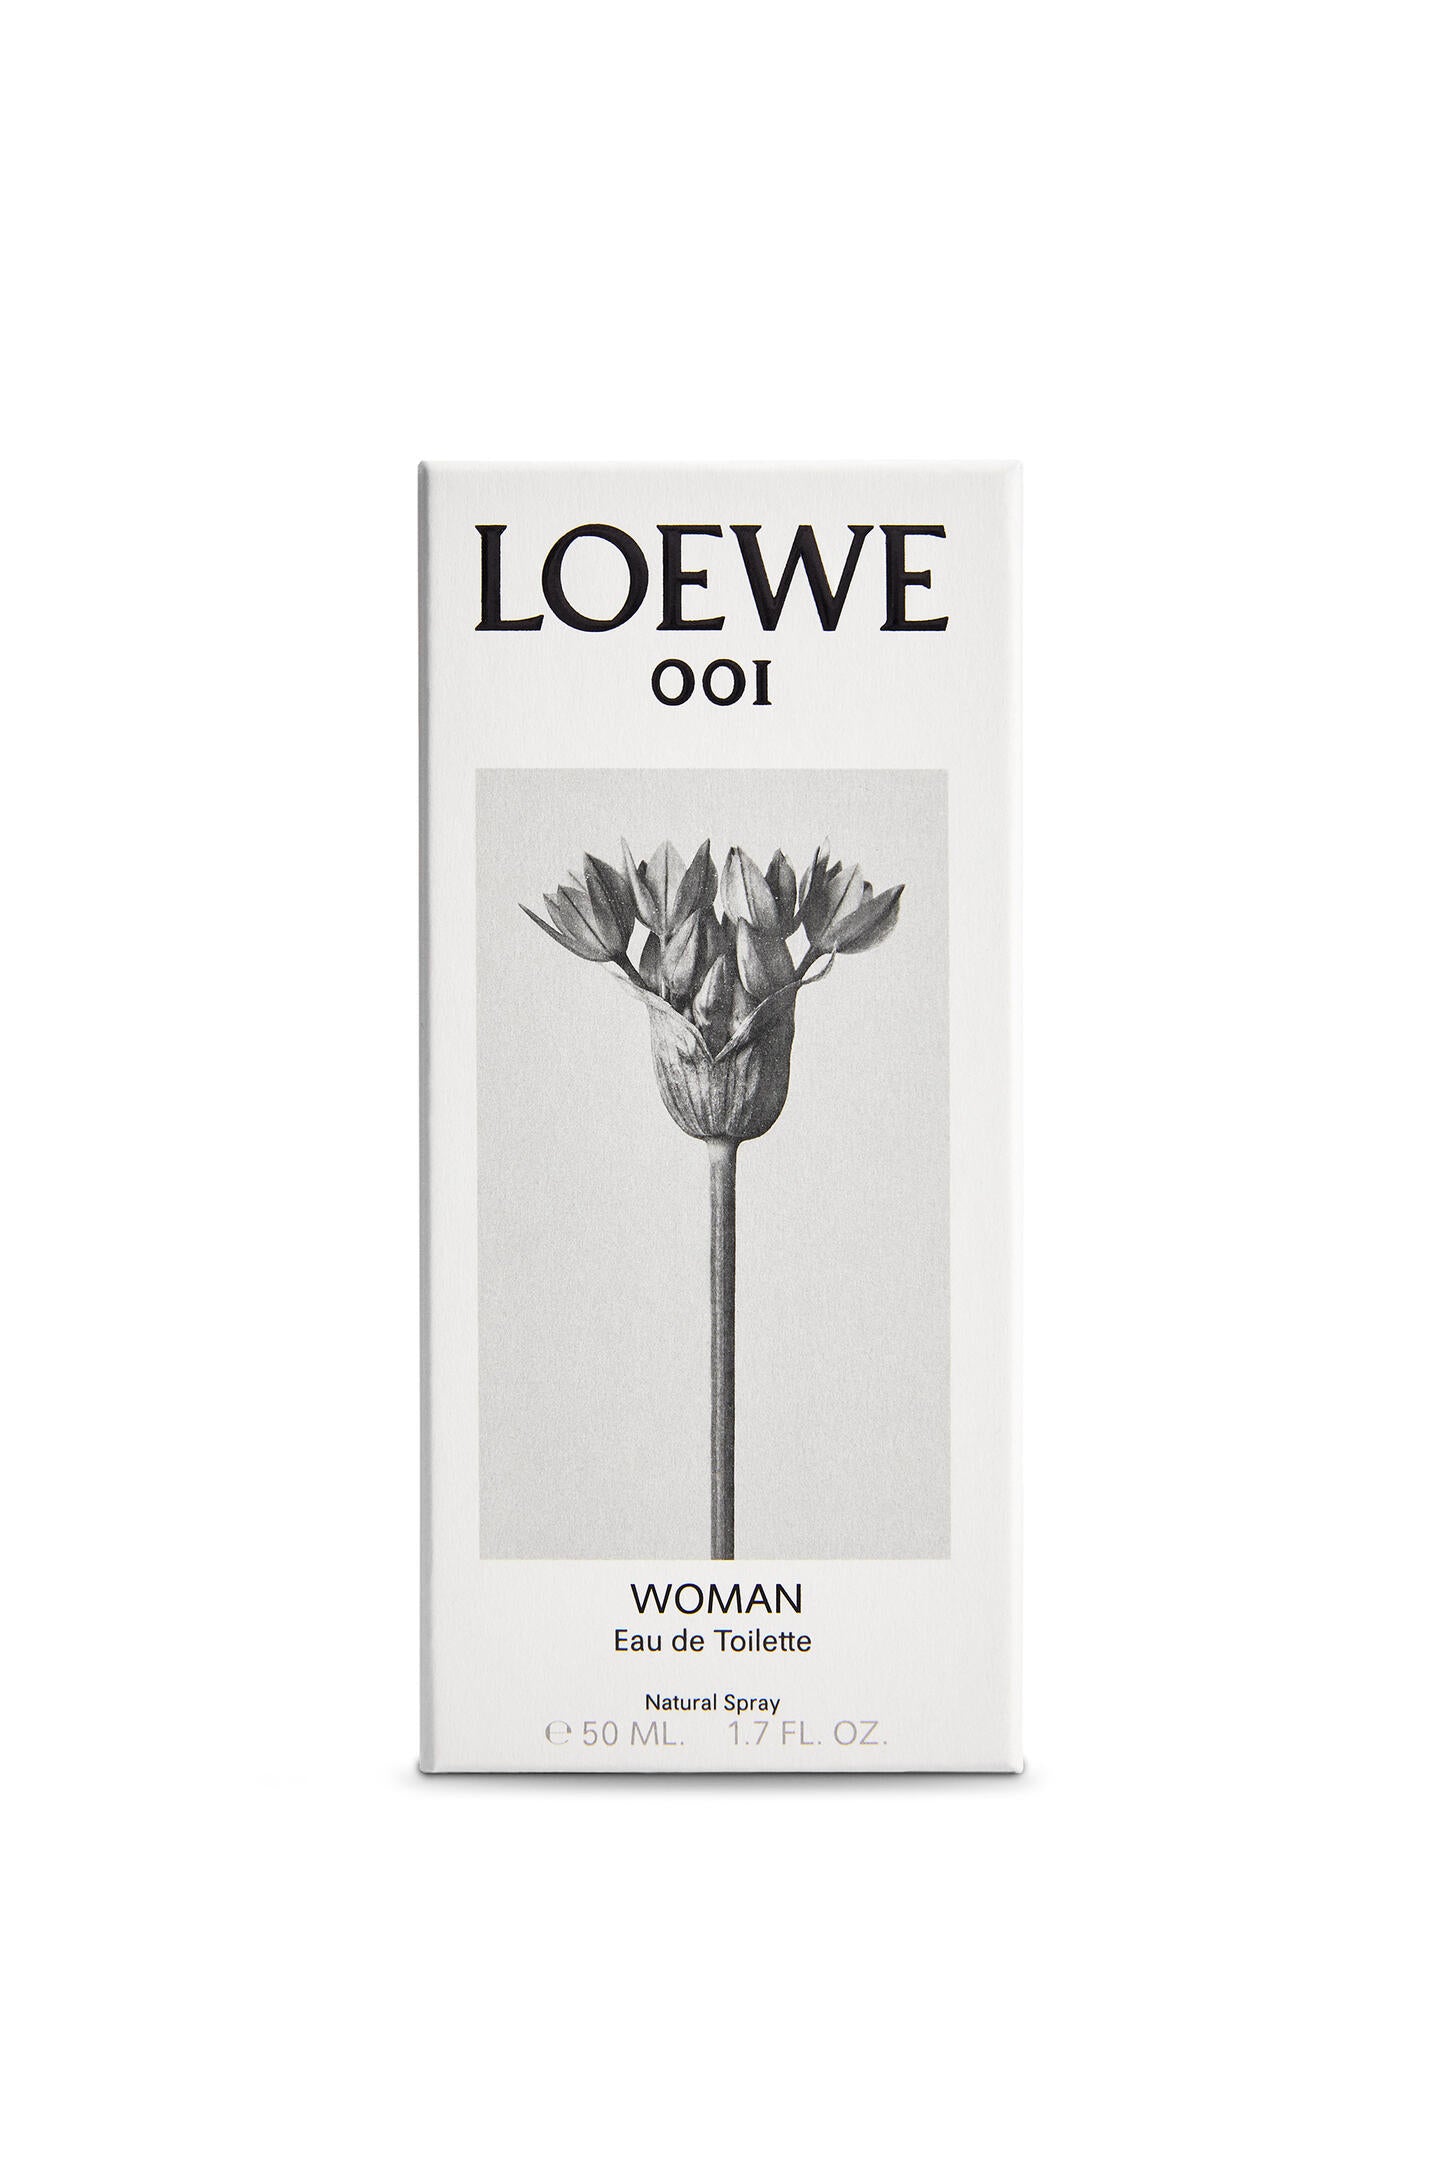 LOEWE 001 Woman Eau De Toilette (75ml)